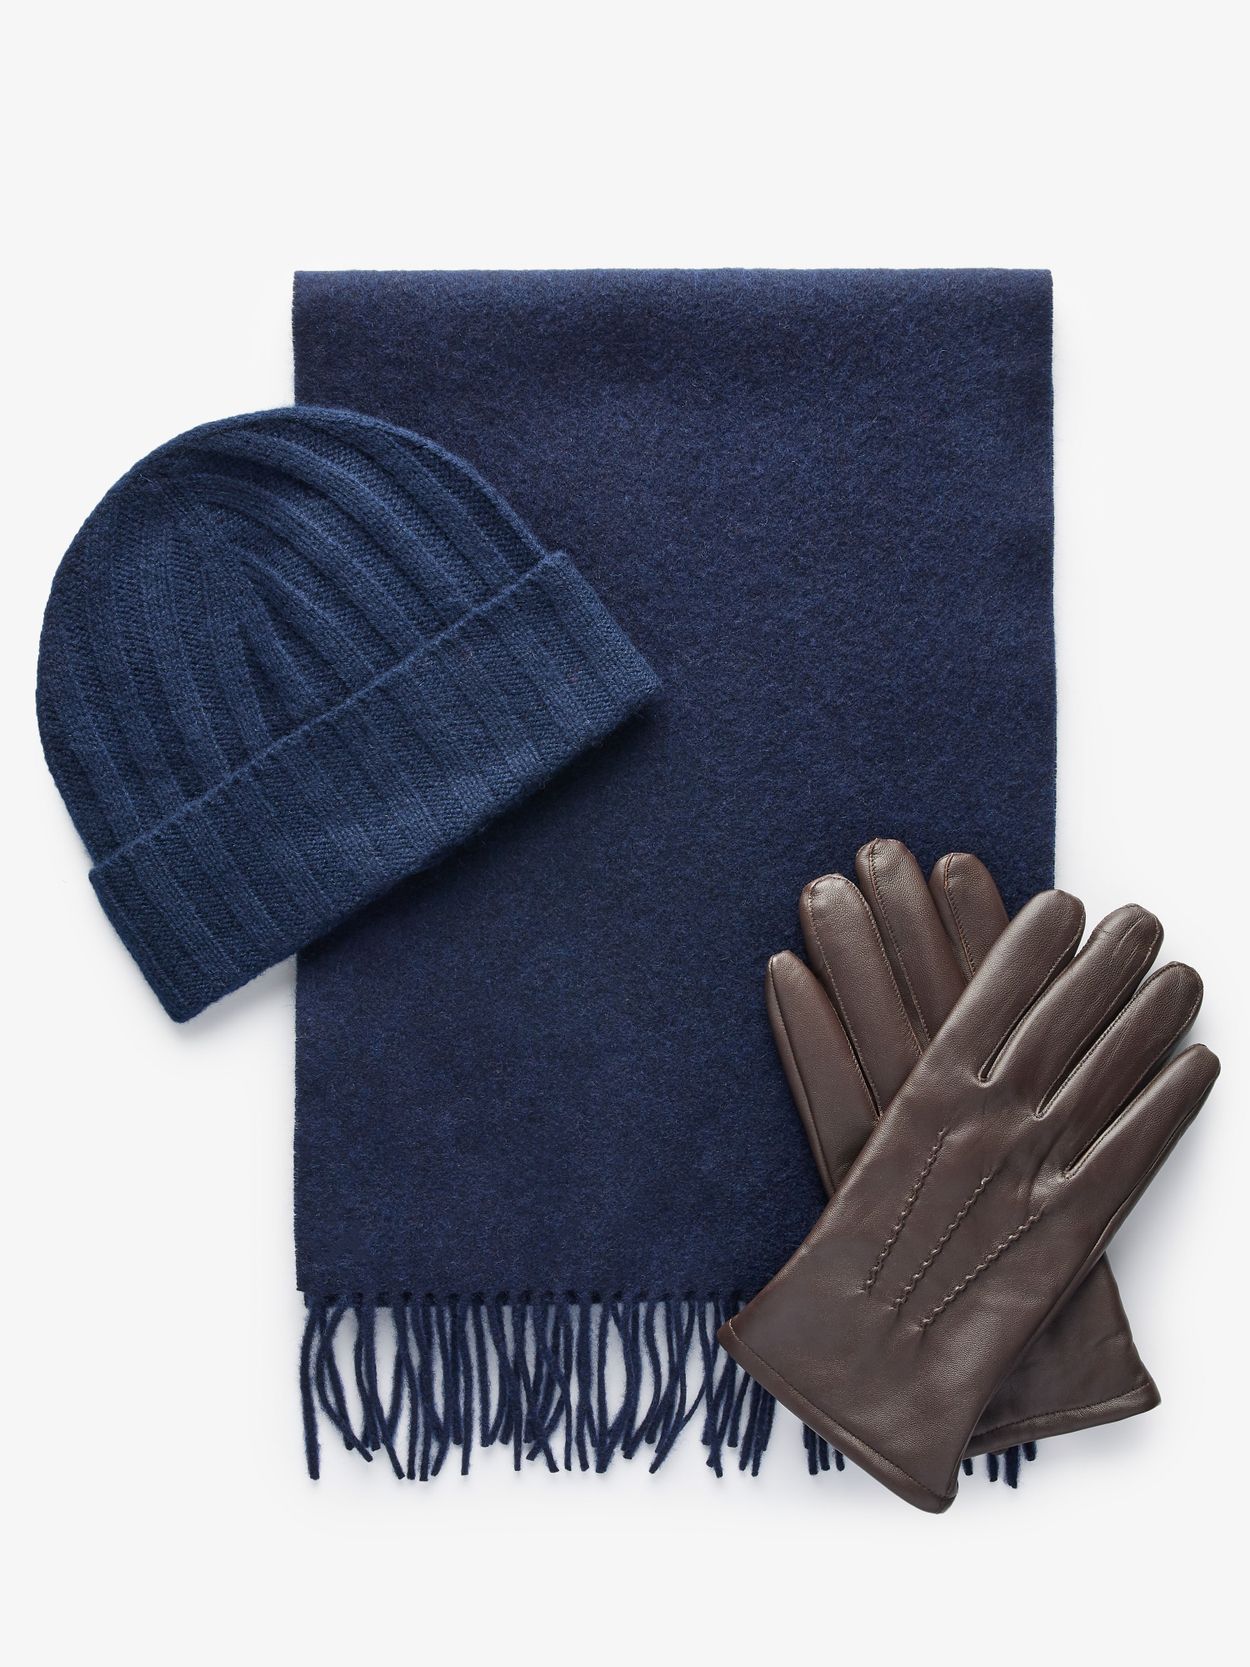 Blaue Wollmütze, Schal und braune Handschuhe